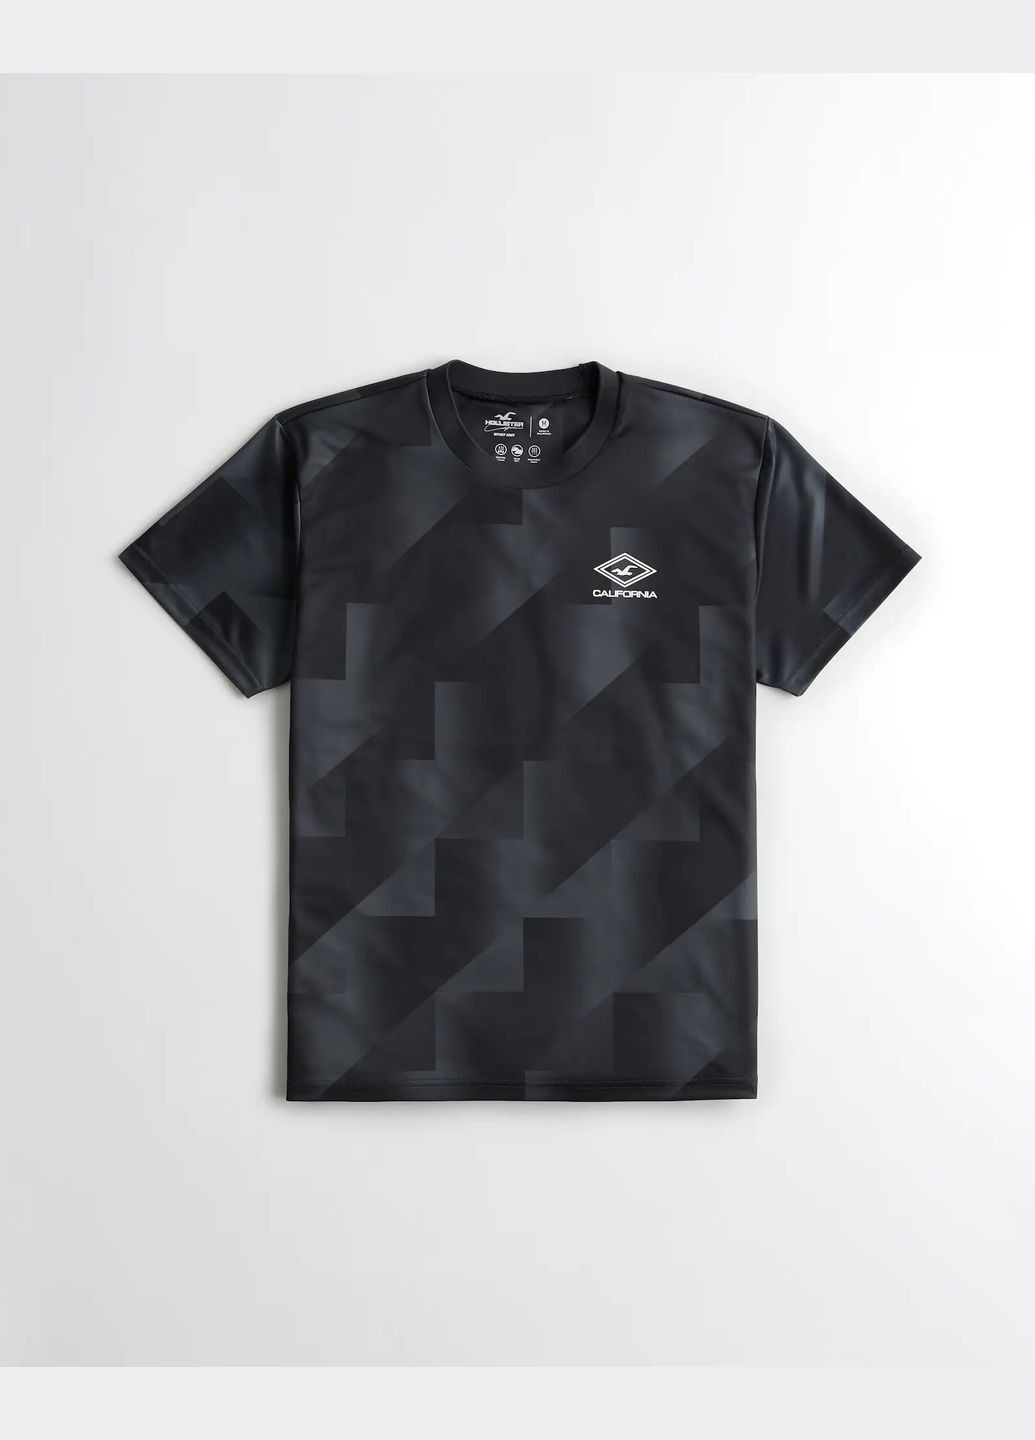 Черная спортивная футболка hc9272m Hollister